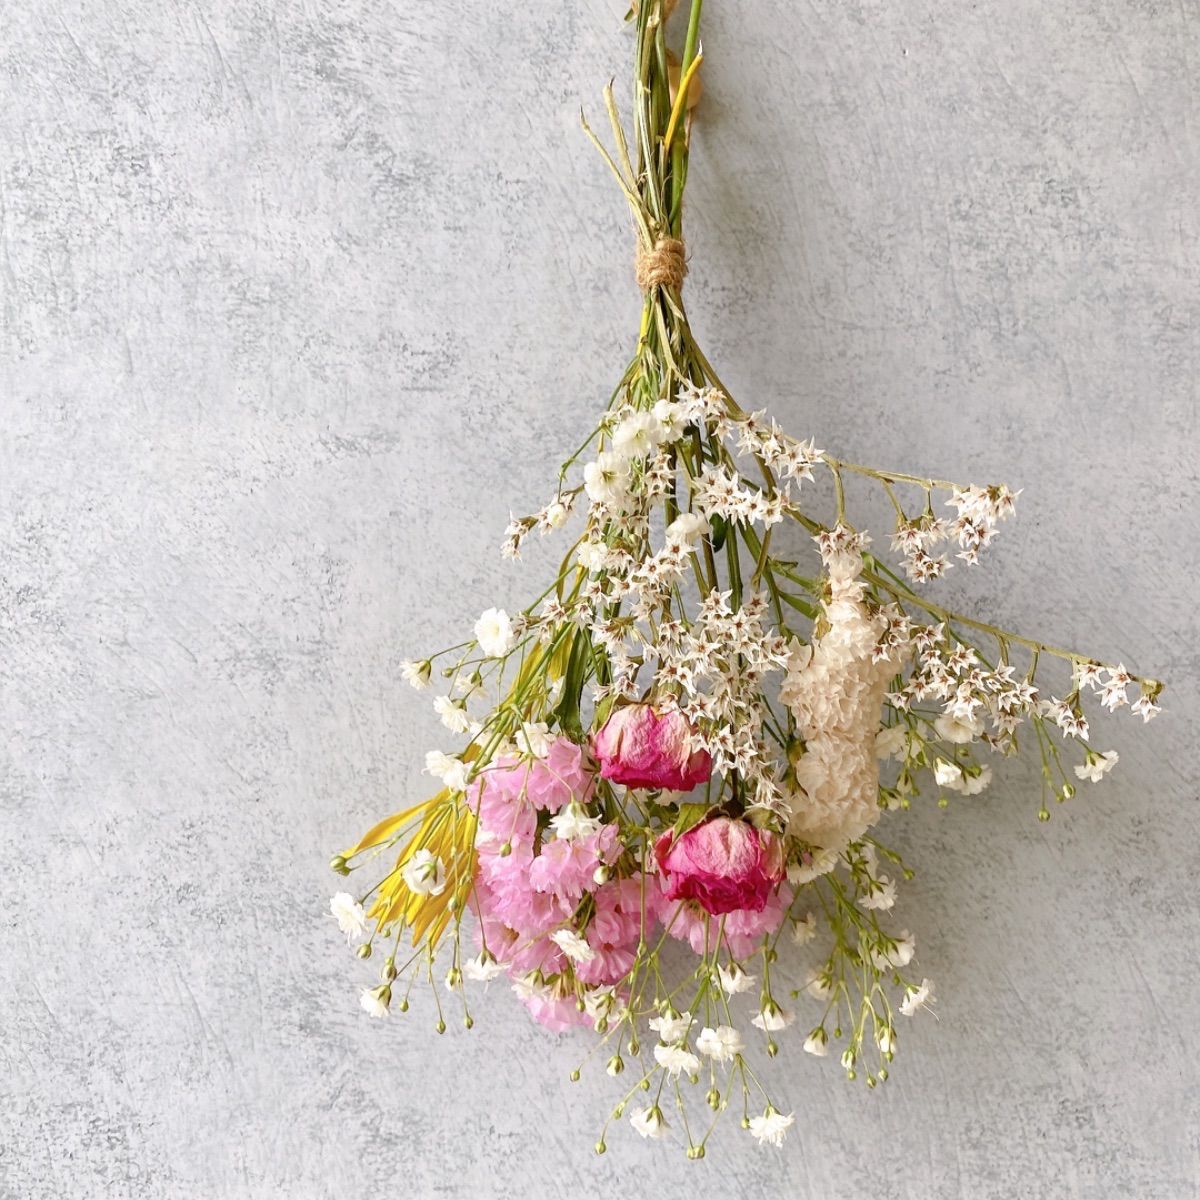 ドライフラワー White&pink カスミソウ 薔薇のスワッグ ブーケ 花束 